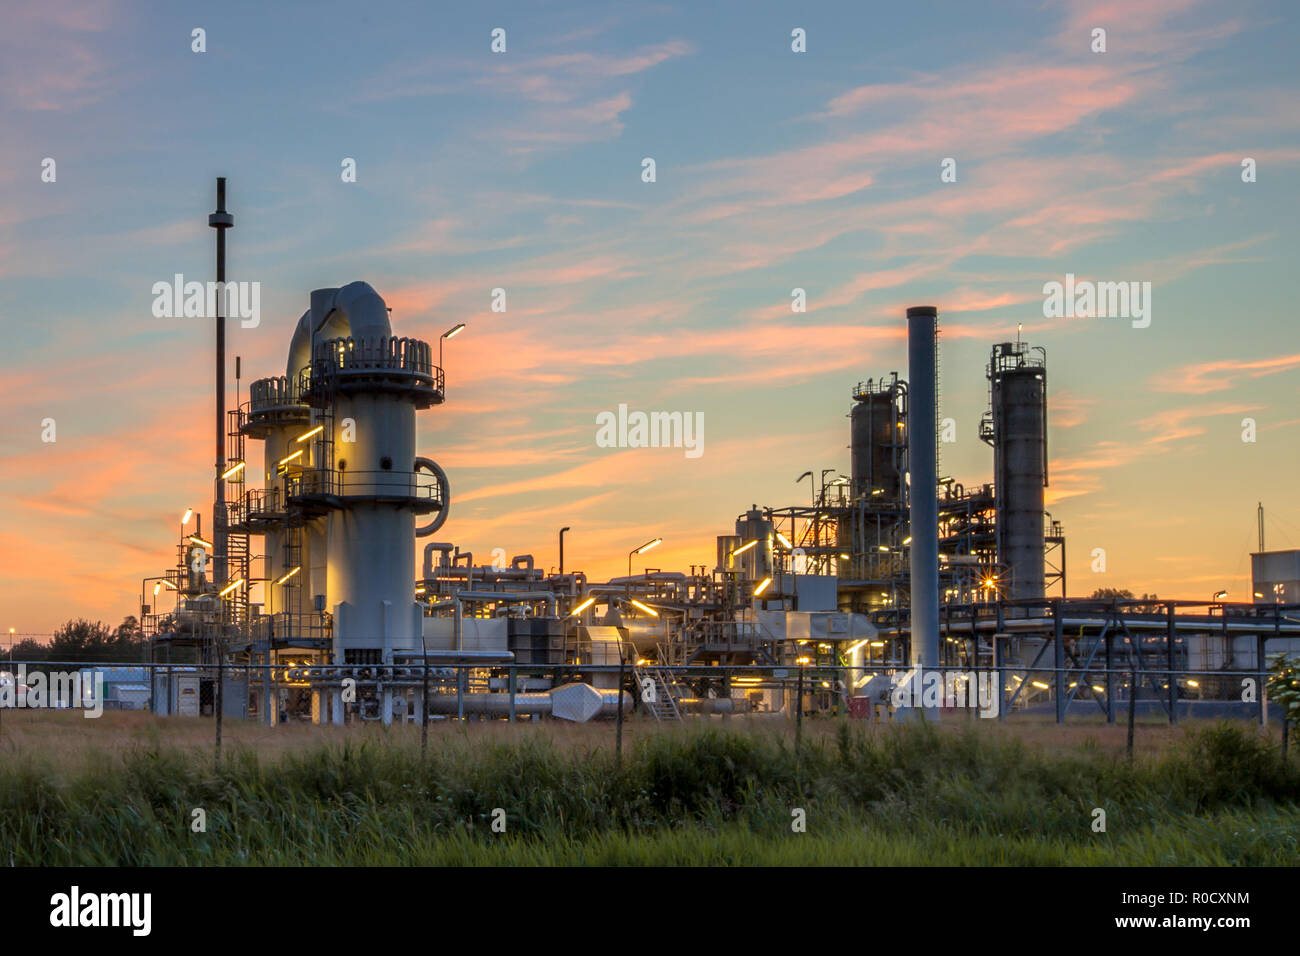 Installation industrielle chimique lourde avec mazework détails de tuyaux dans le crépuscule sunset scene Banque D'Images